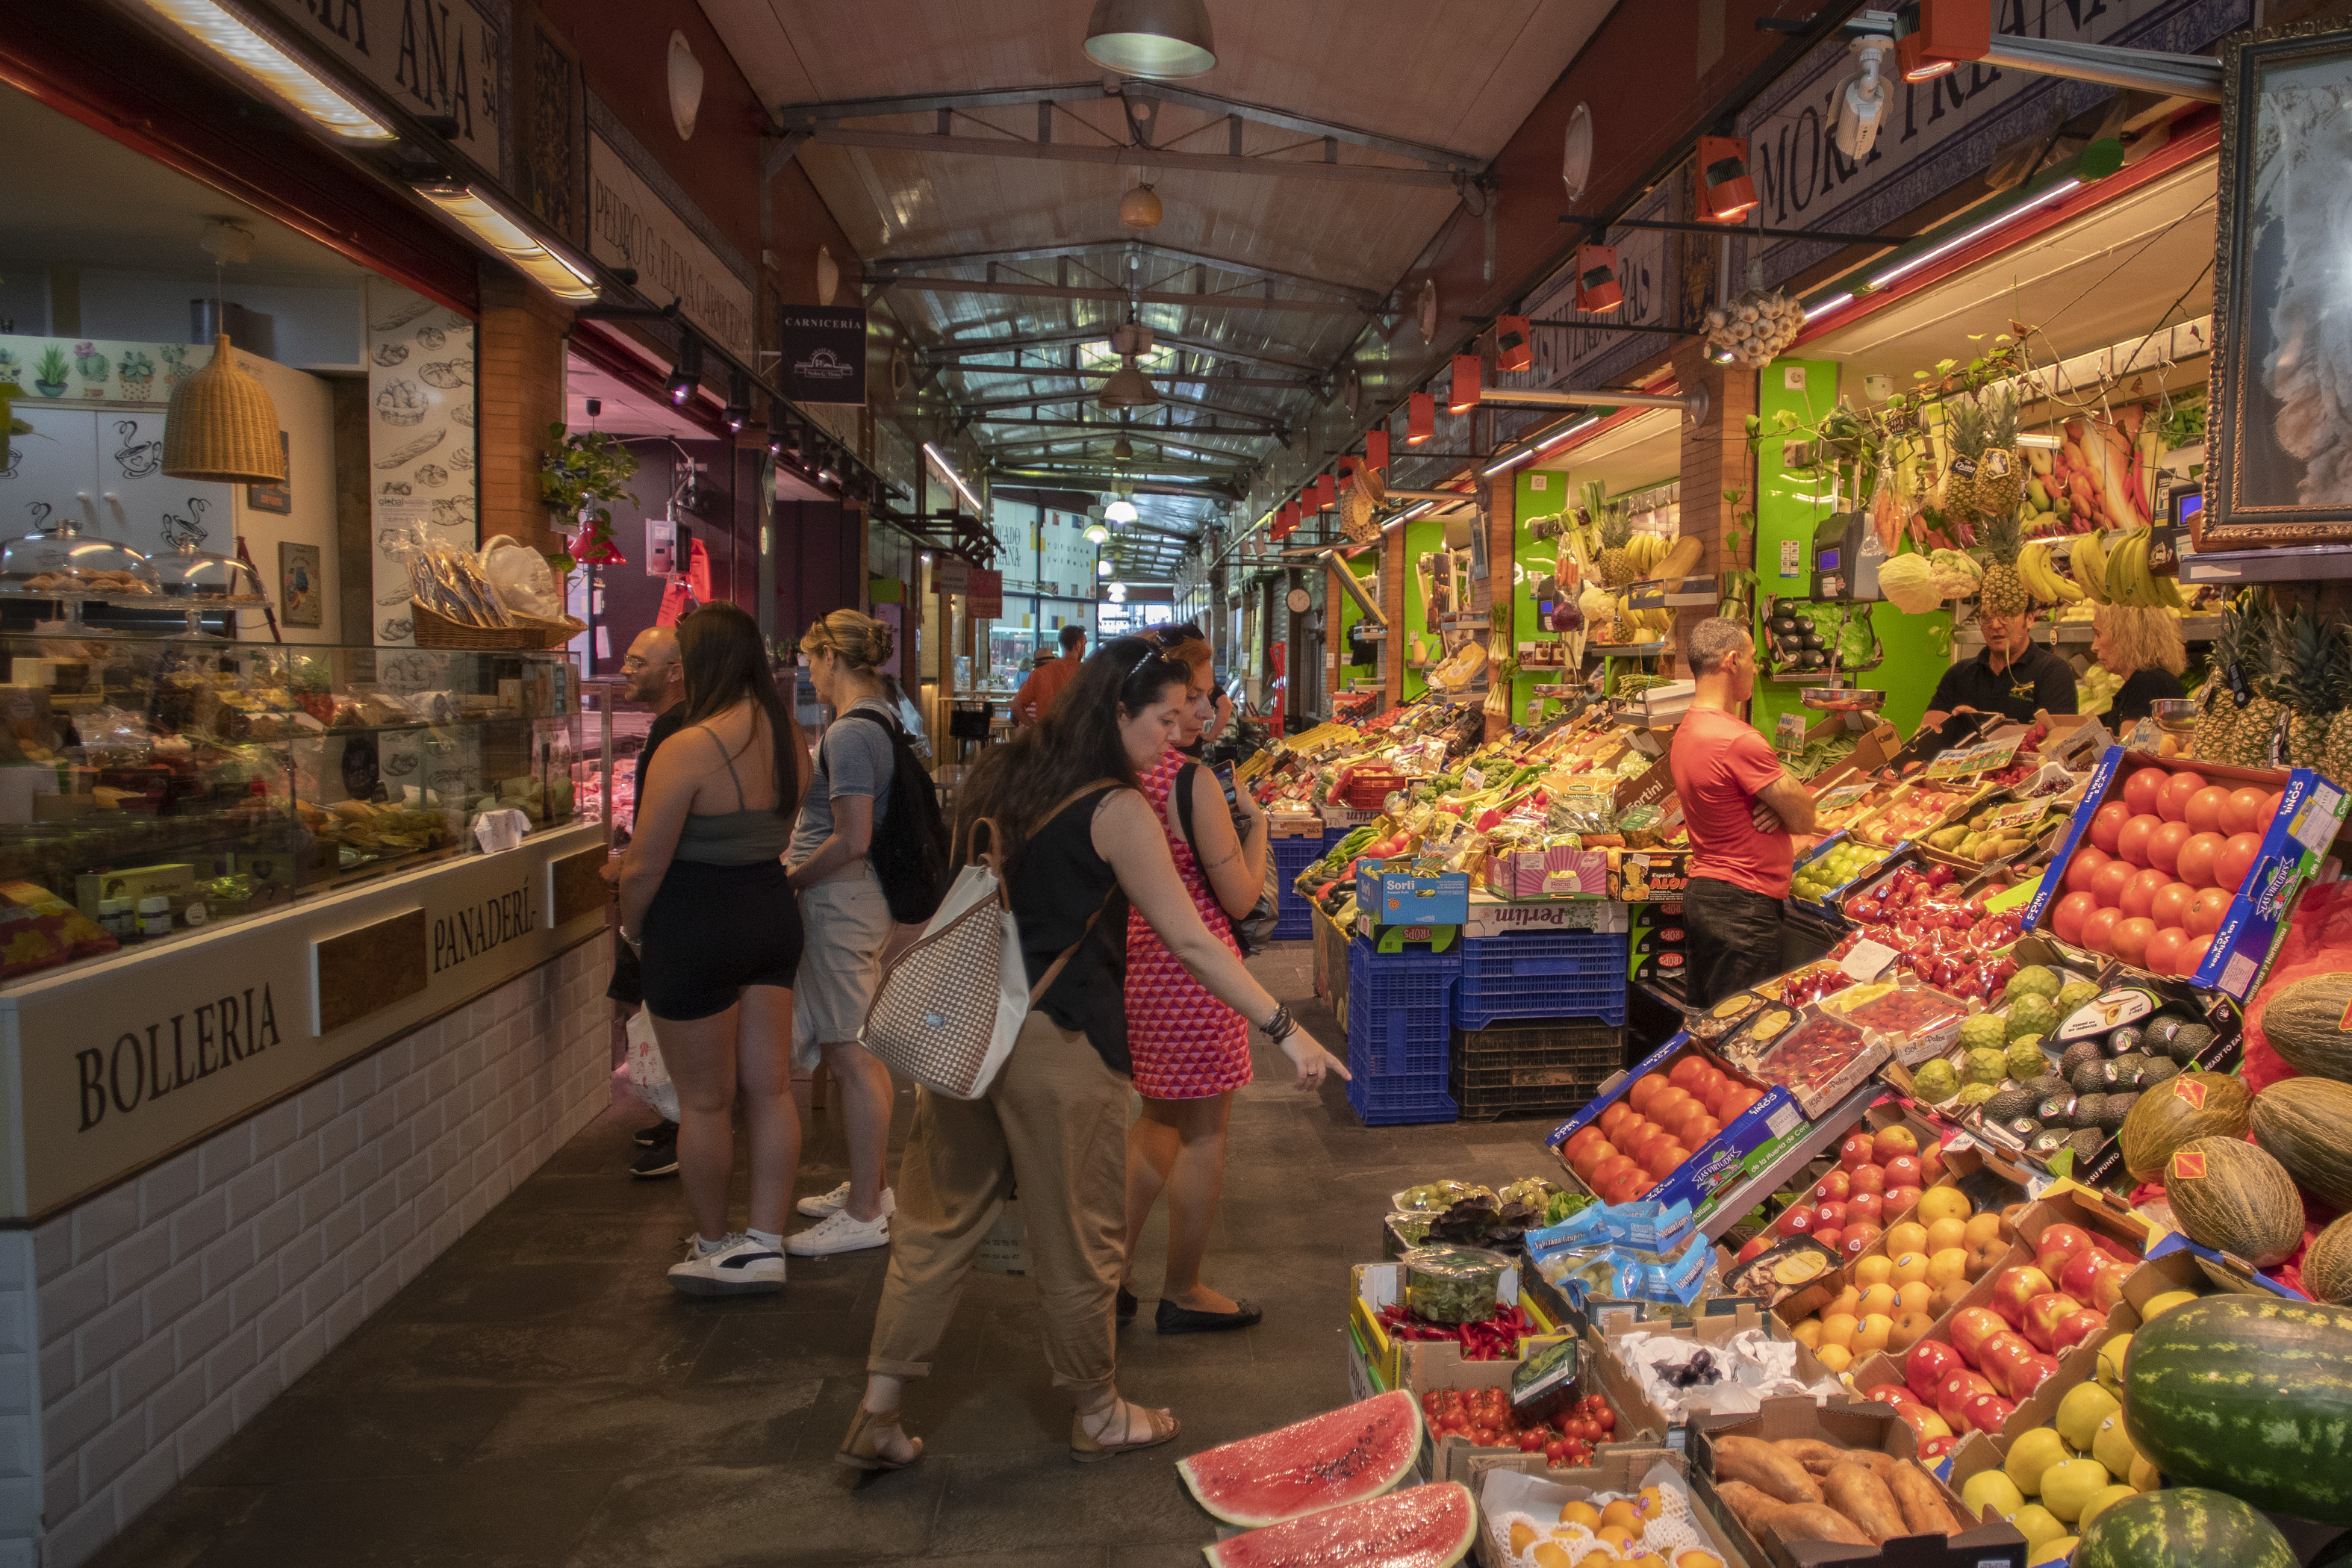 En la imagen, puestos de alimentación en el mercado de Triana, Sevilla.